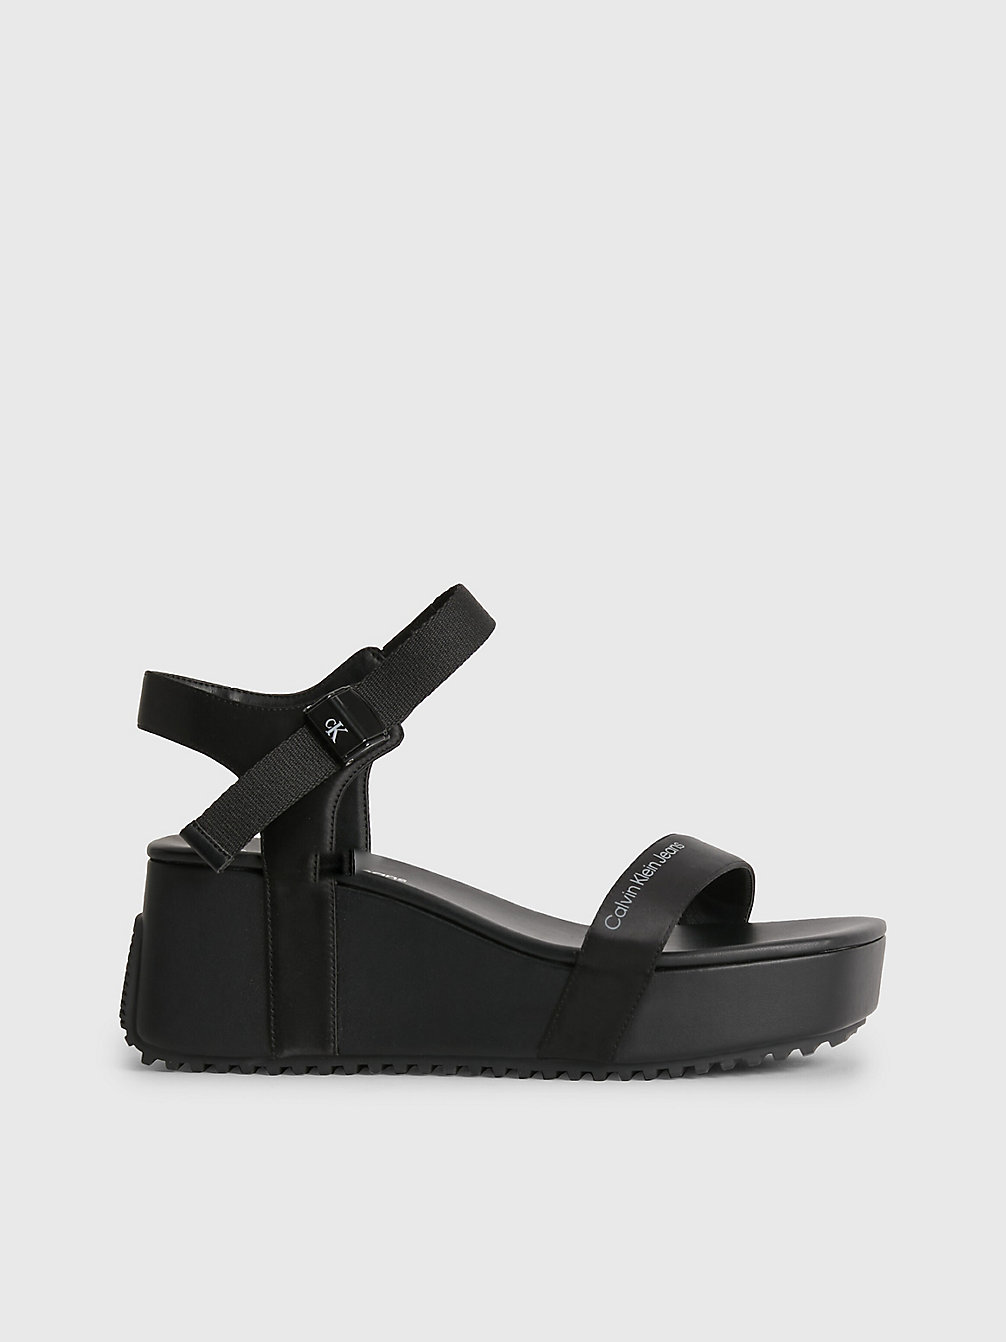 BLACK / OVERCAST GREY Recycled Satin Platform Wedge Sandals undefined women Calvin Klein